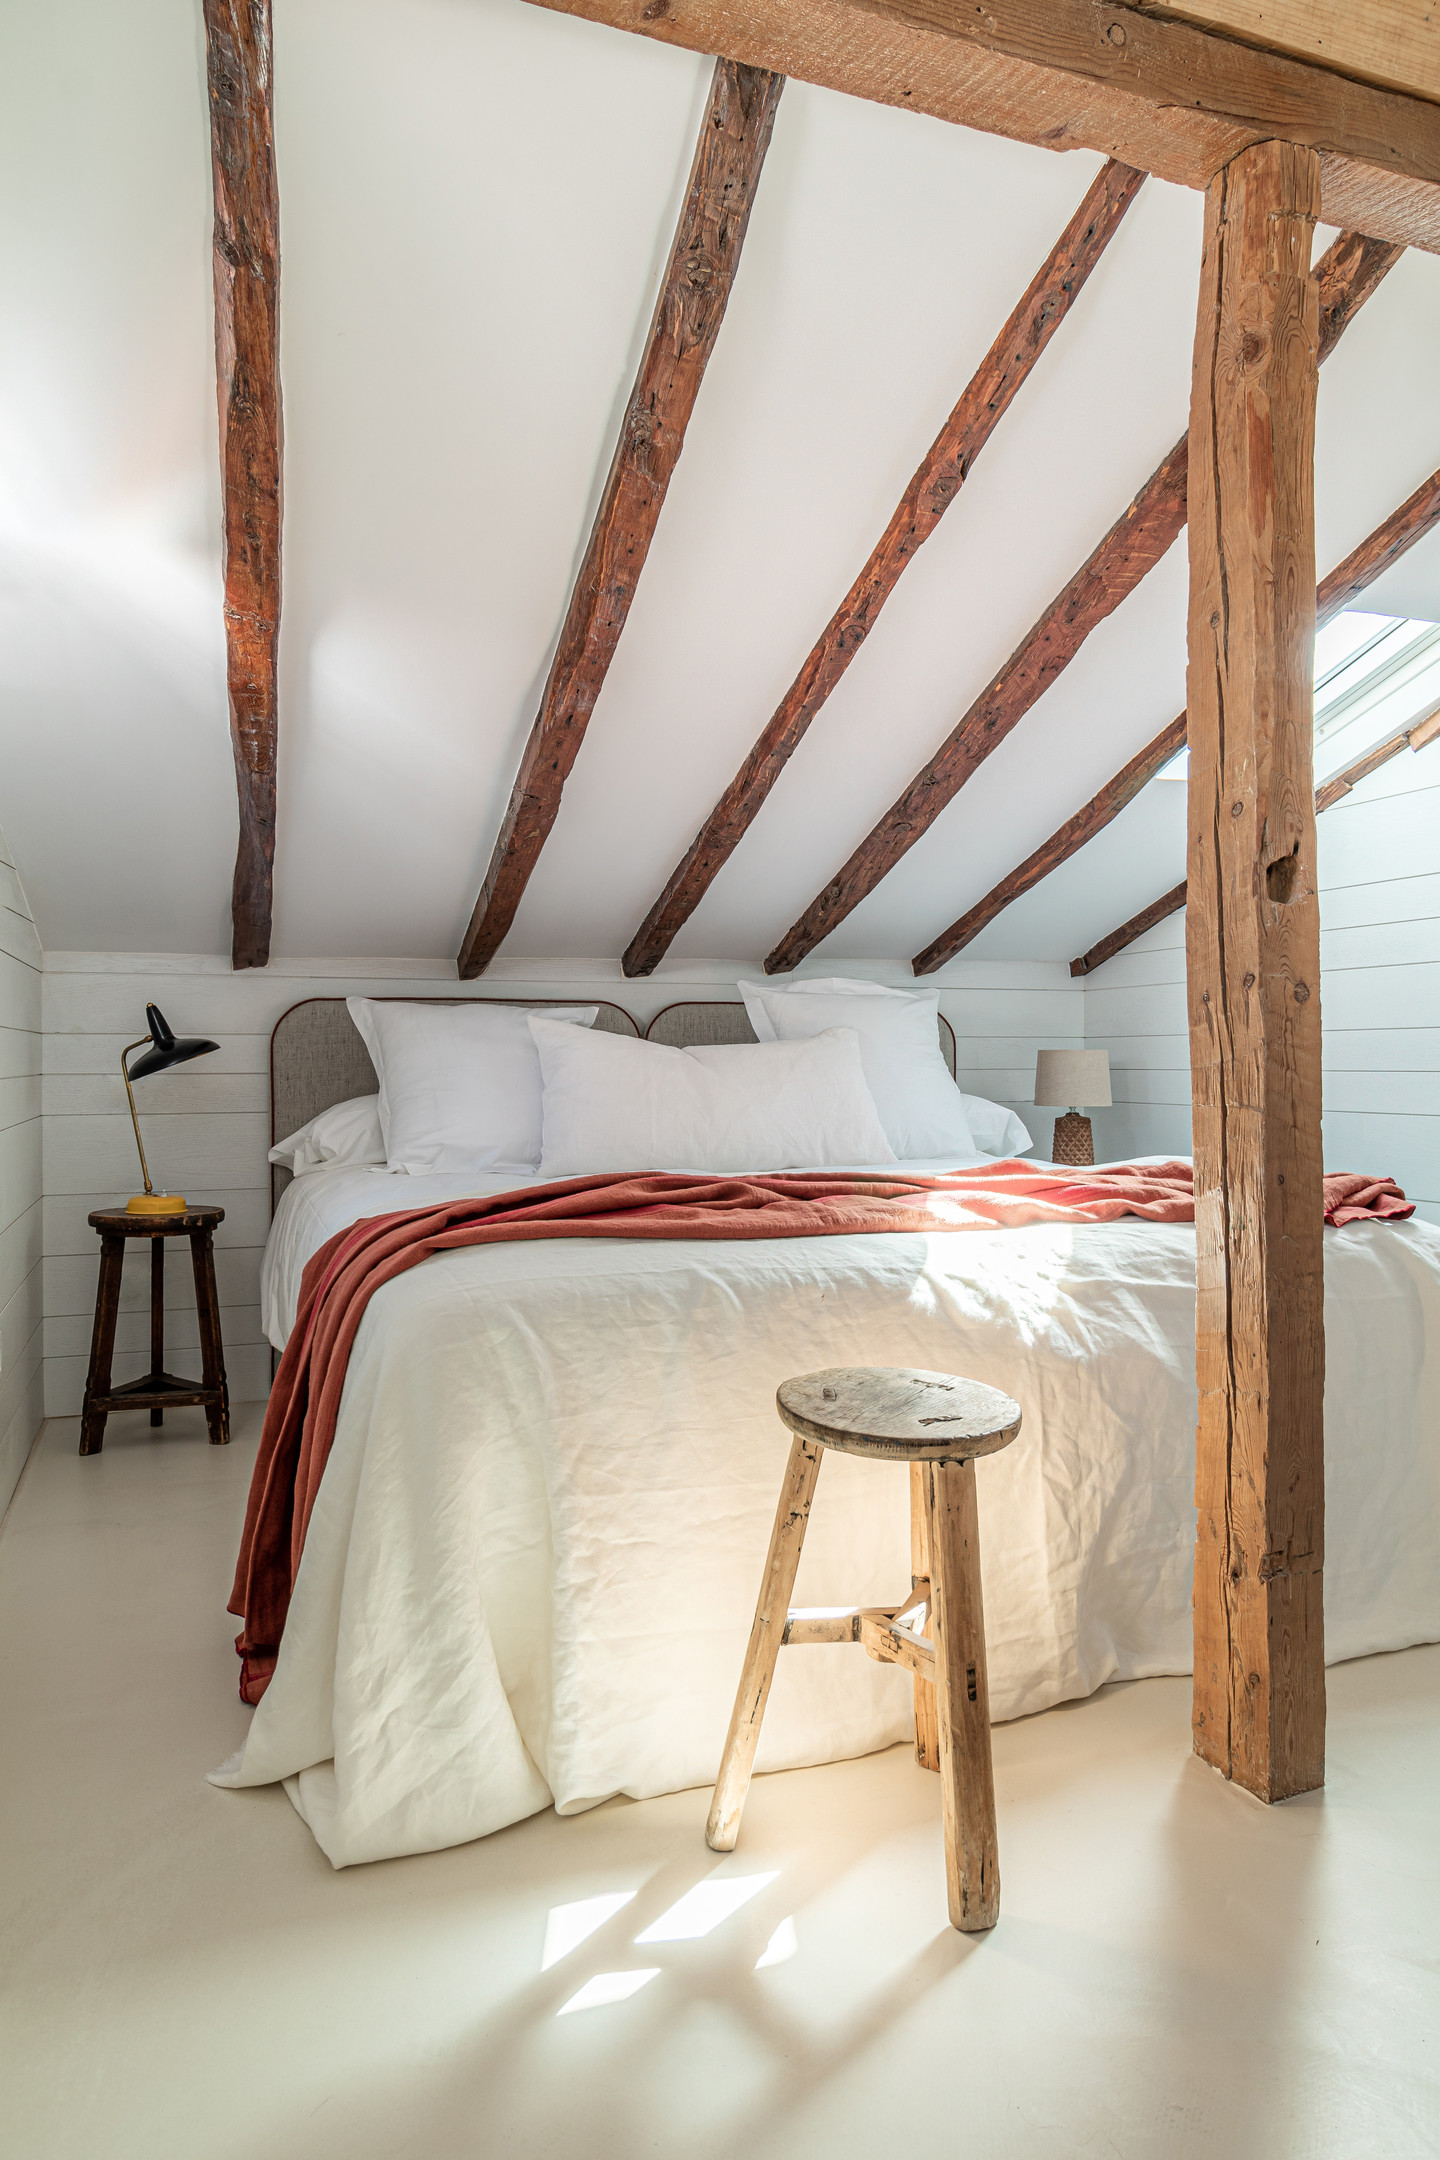 Tầng trên bao gồm 2 phòng ngủ và 1 phòng tắm riêng biệt. Tường, sàn và trần xi măng sơn màu trắng cho cảm giác căn hộ được 'nâng cao' lên về mặt thị giác. Dầm gỗ trên trần được giữ lại từ cấu trúc cũ để tạo cảm giác thô mộc cho phòng ngủ. 